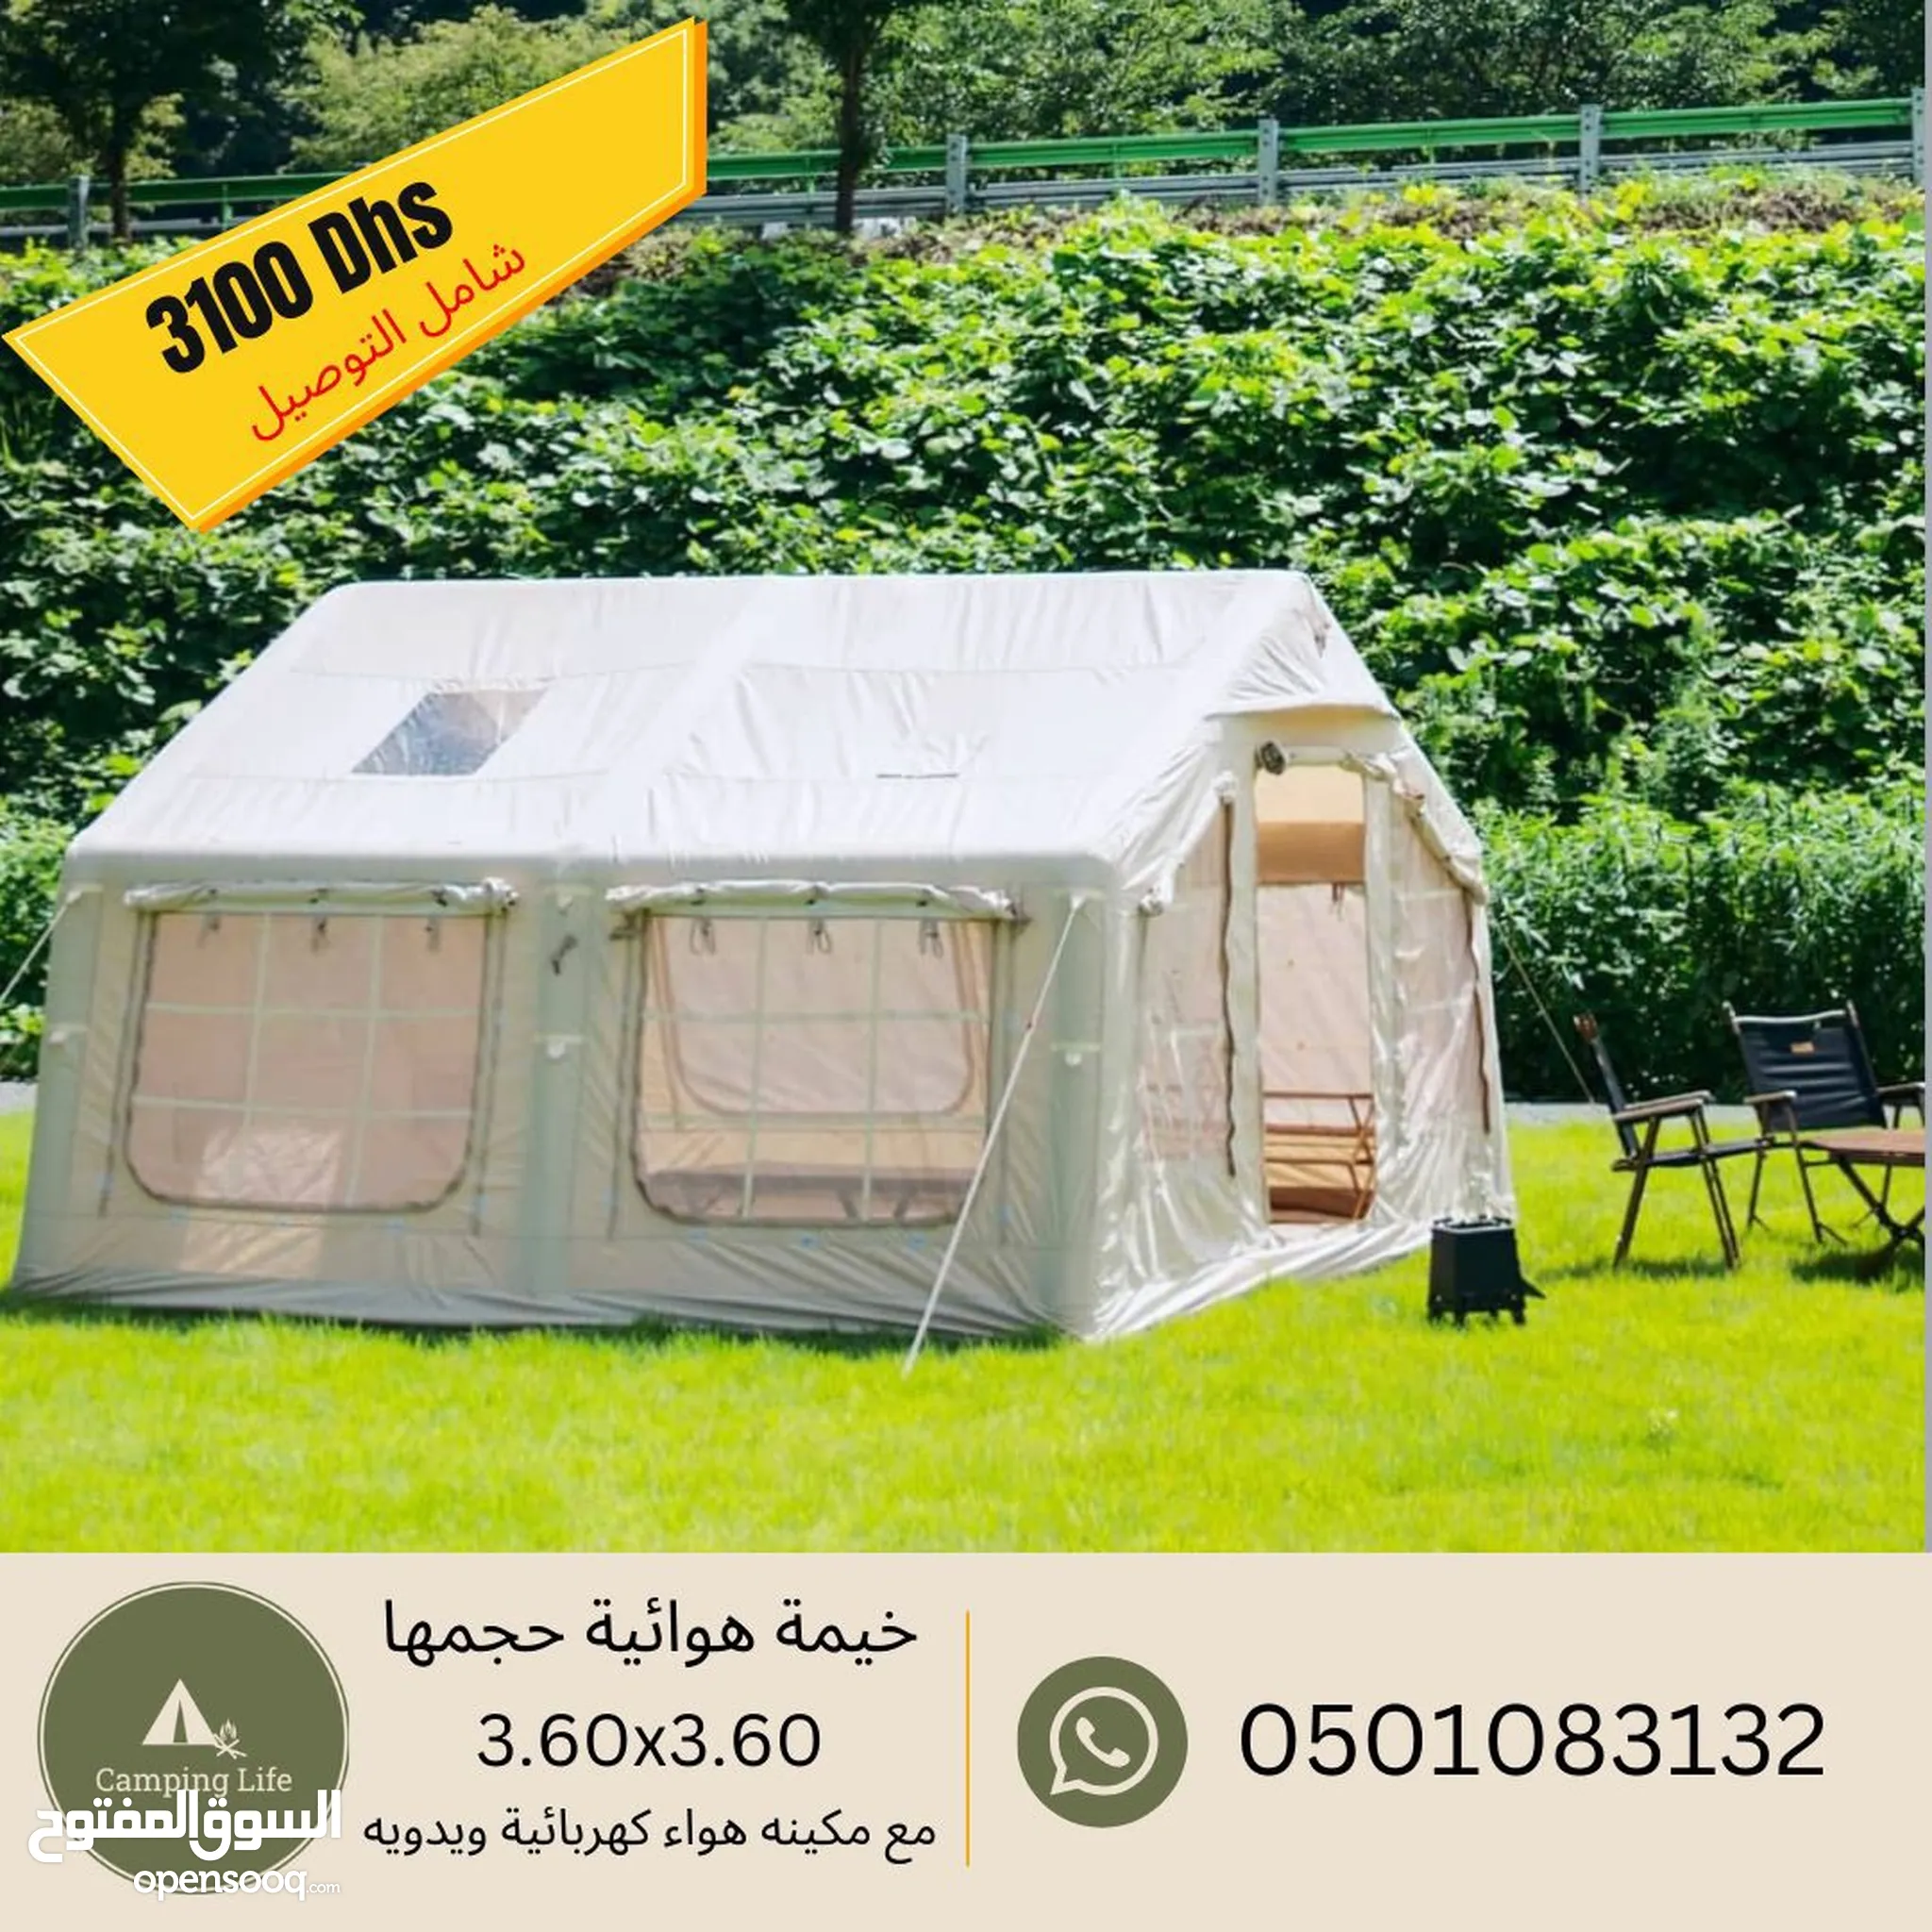 خيام للبيع بسعر رخيص - لوازم تخييم في الإمارات : خيمة صغيرة للبيع | السوق  المفتوح